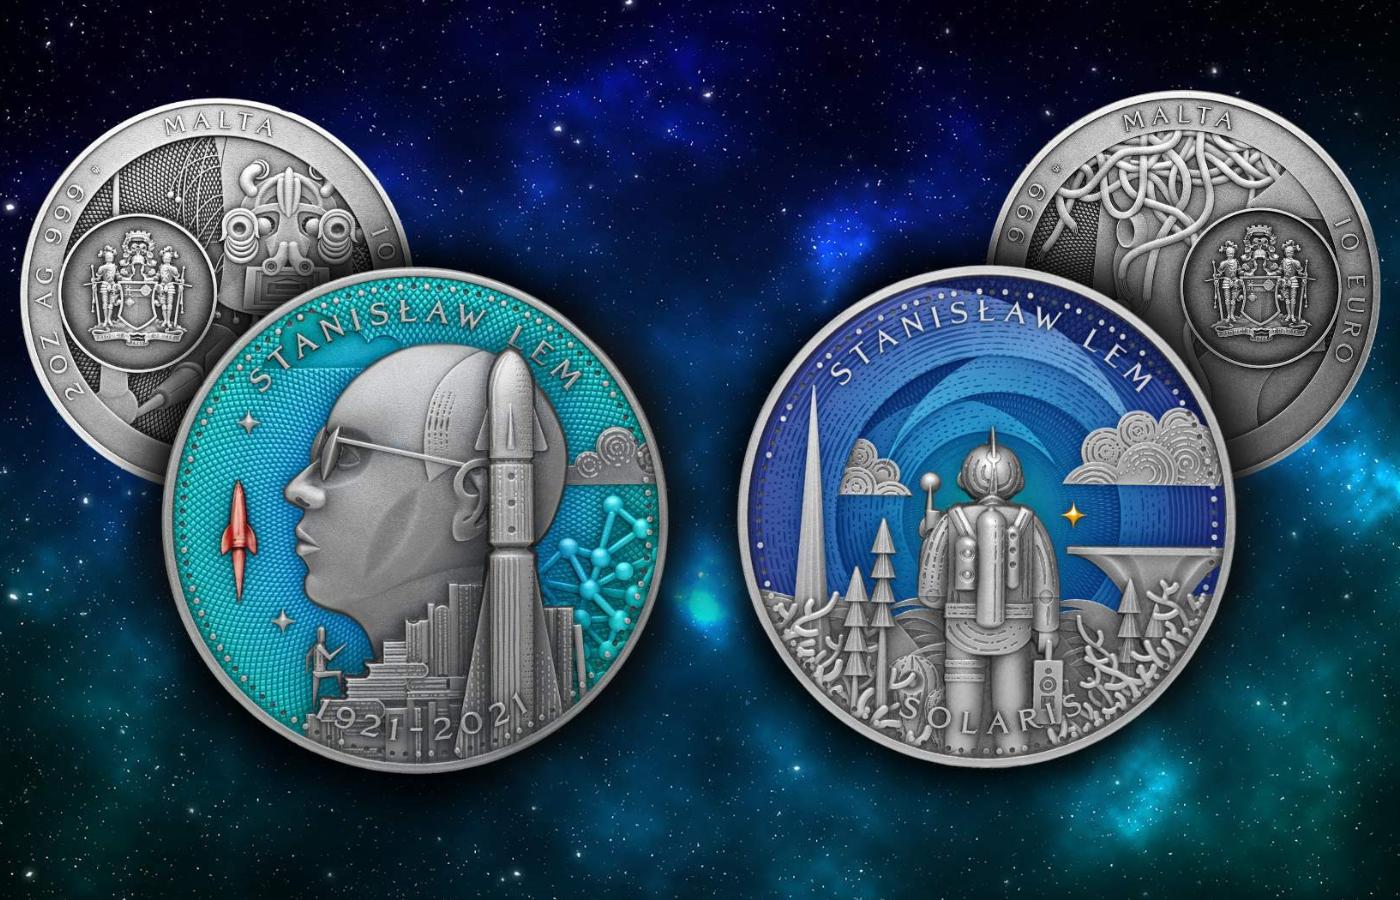 Pierwsze na świecie monety Stanisław Lem i Solaris z serii 